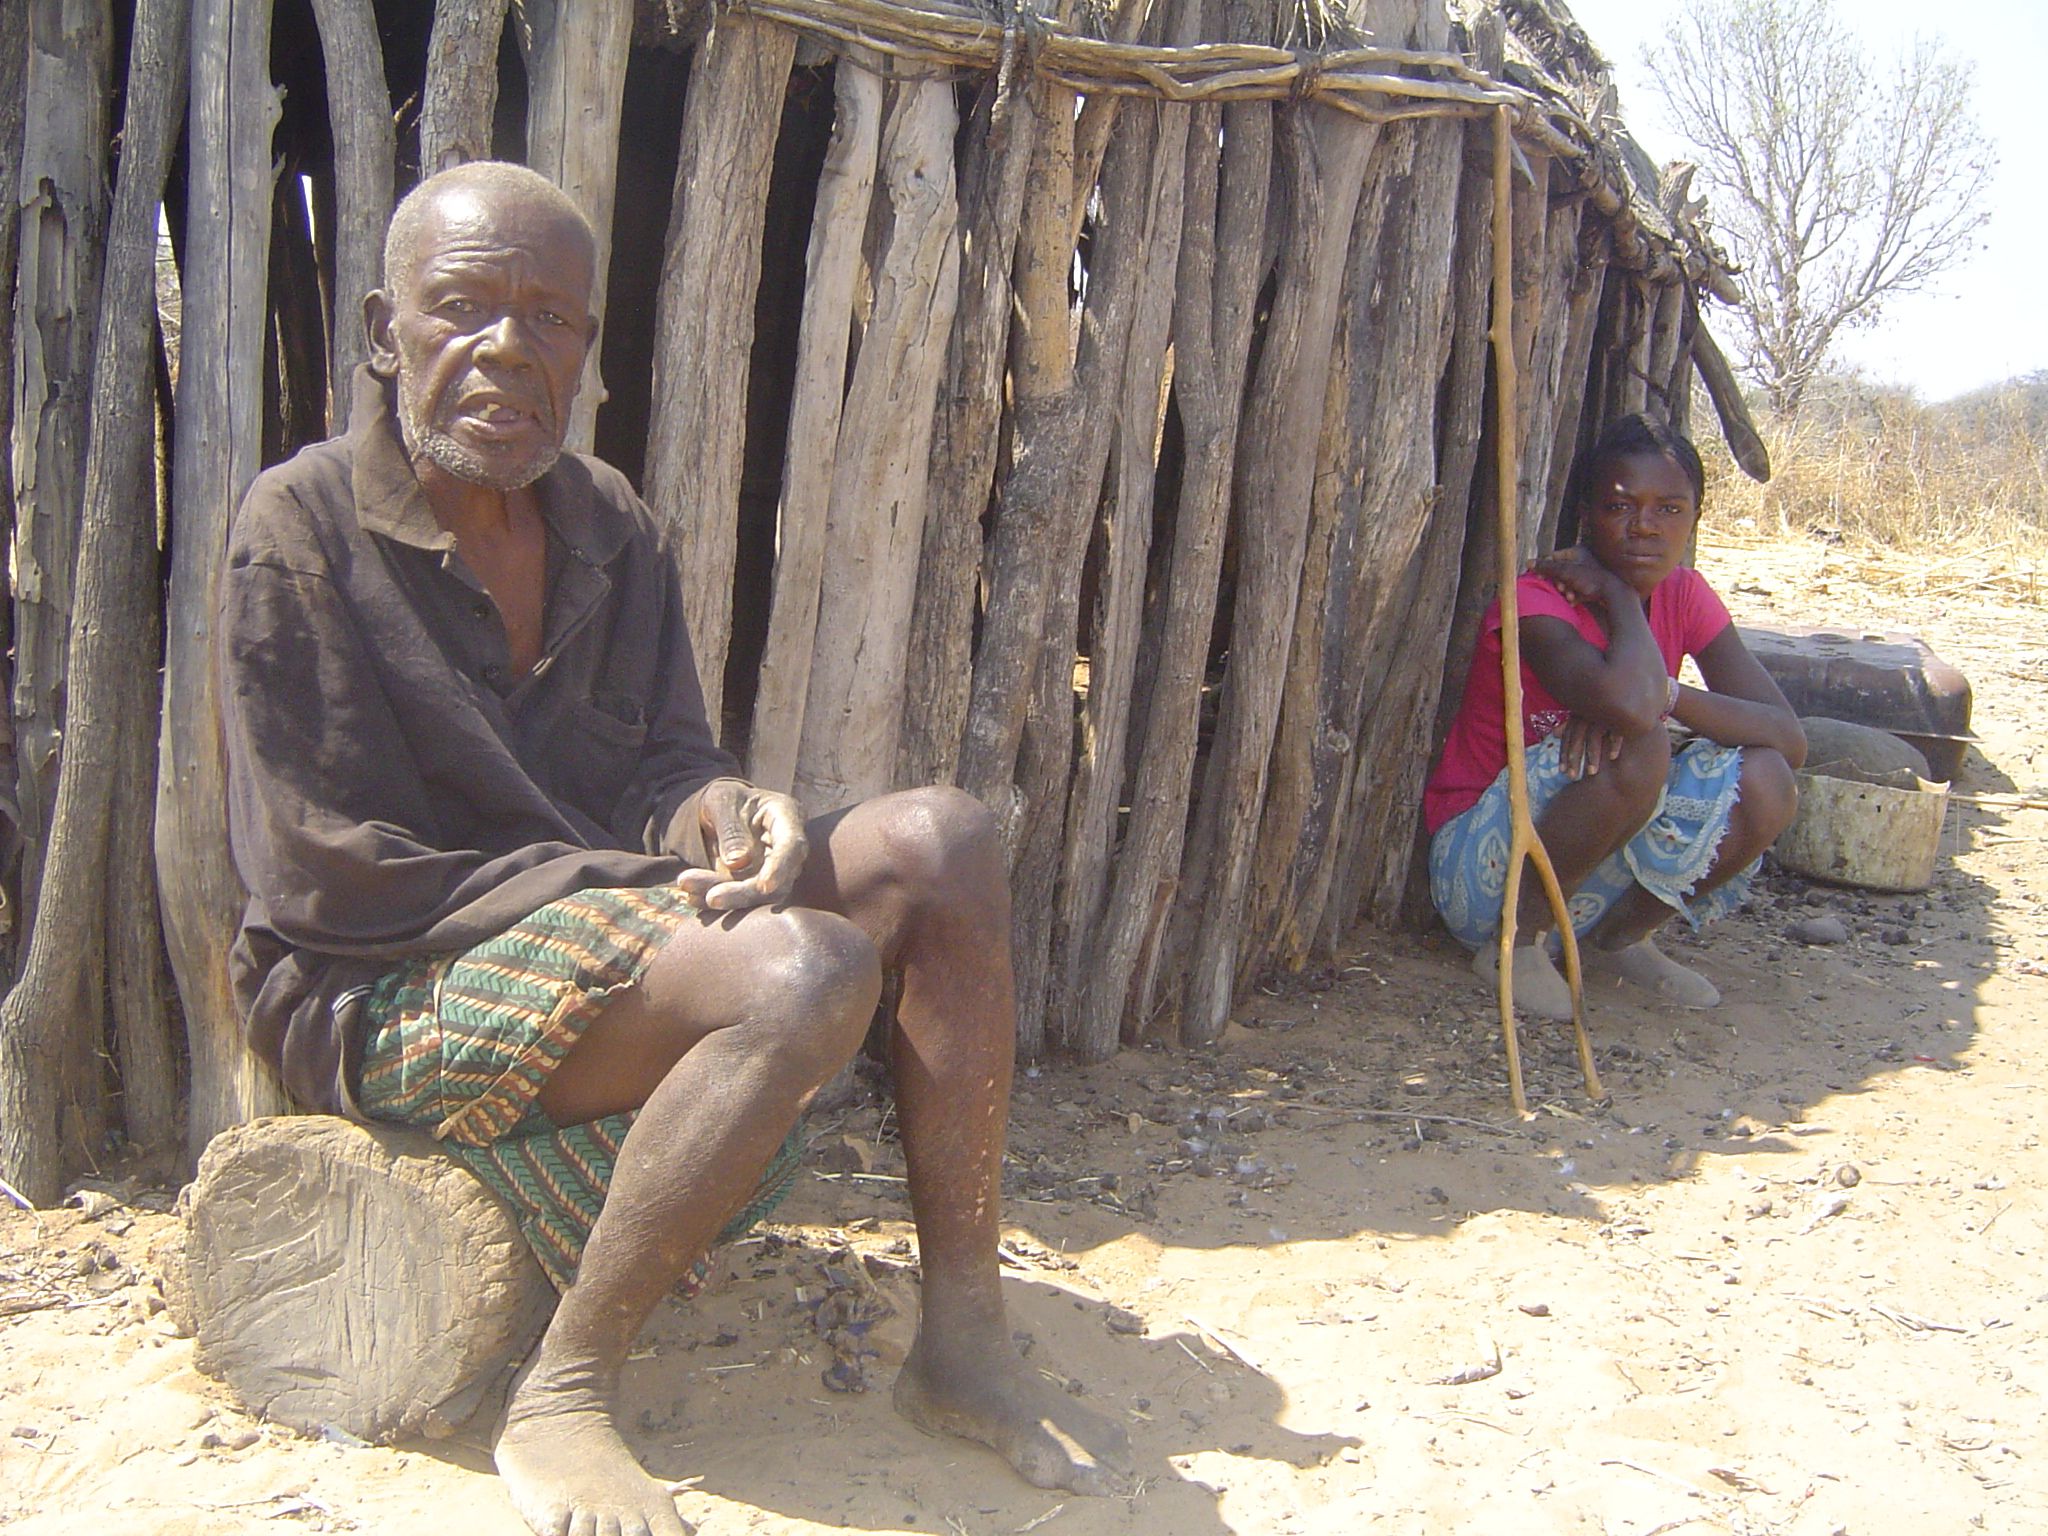 Angolan kuivuus koettelee erityisesti heikoimmassa asemassa olevia ihmisiä